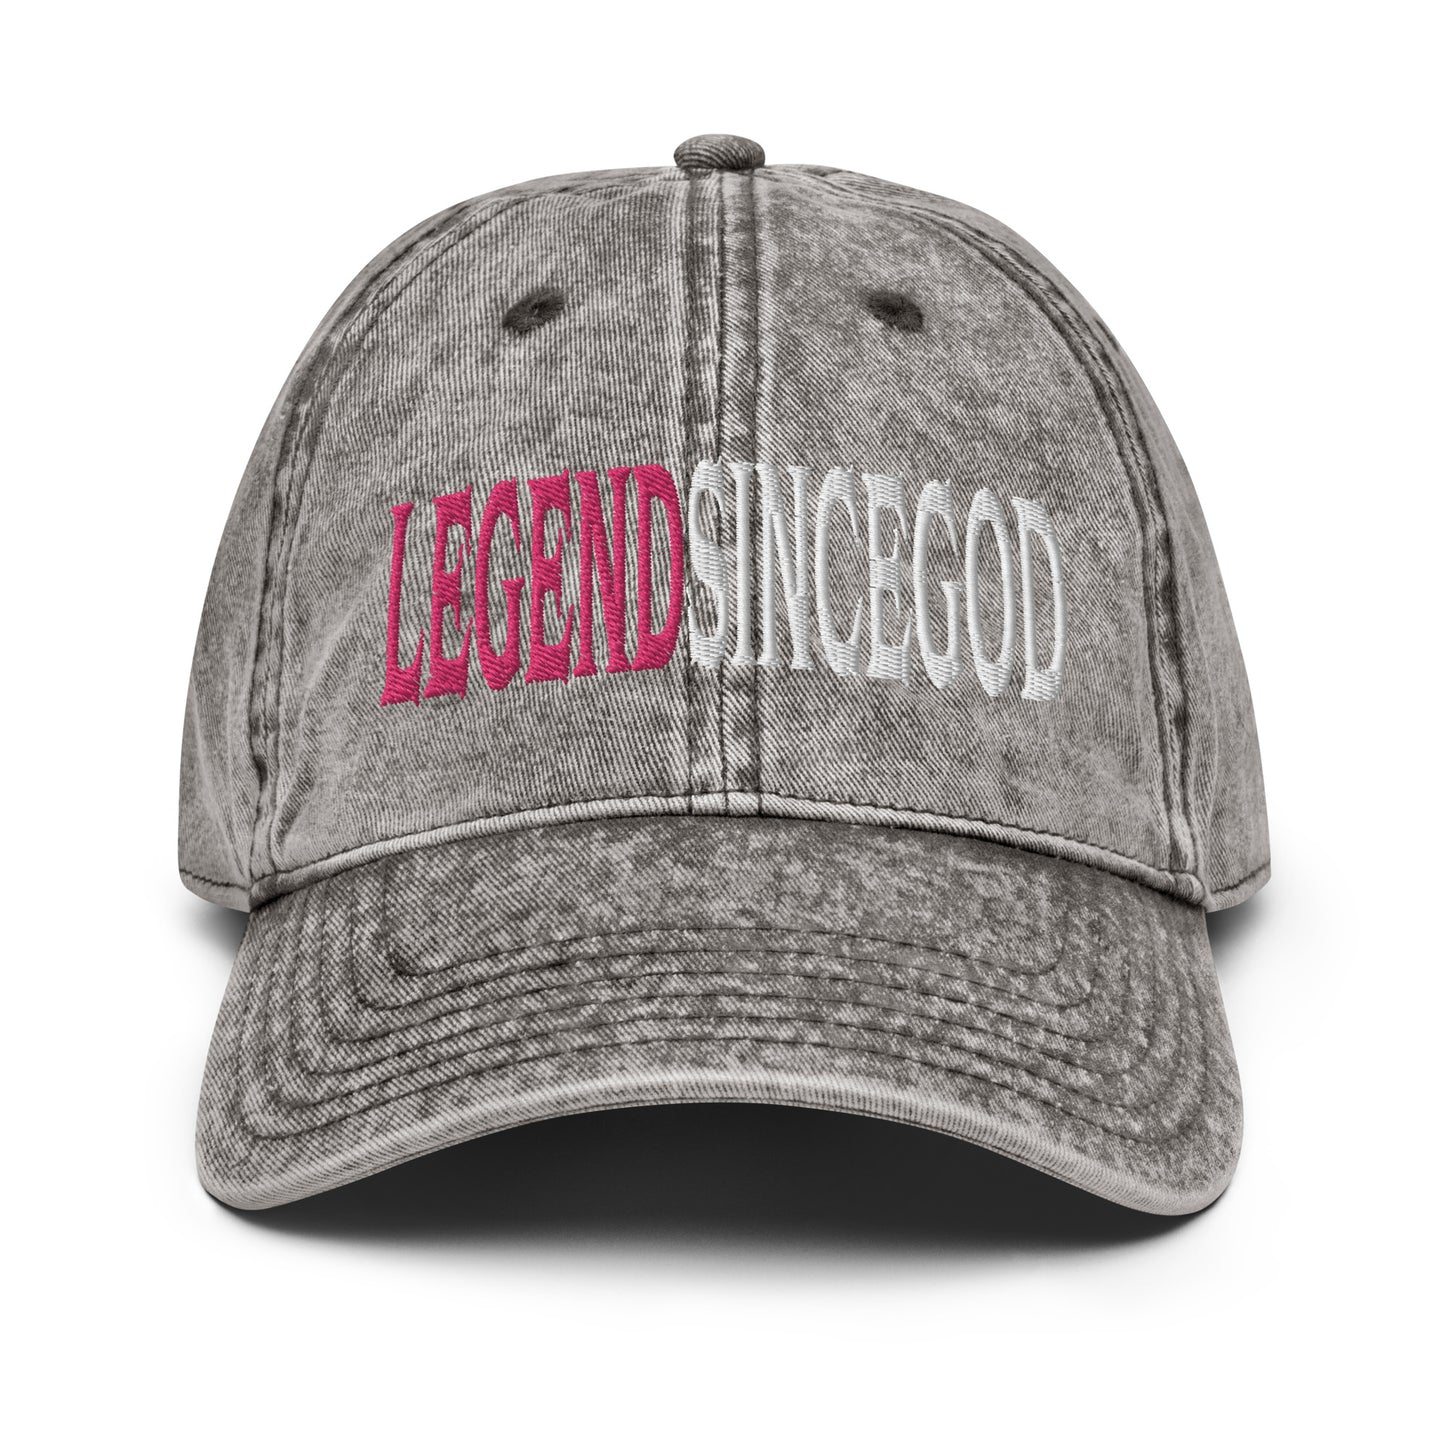 Legend Since God | Washed-Out Vintage Cap | Dad Hat Embroidered